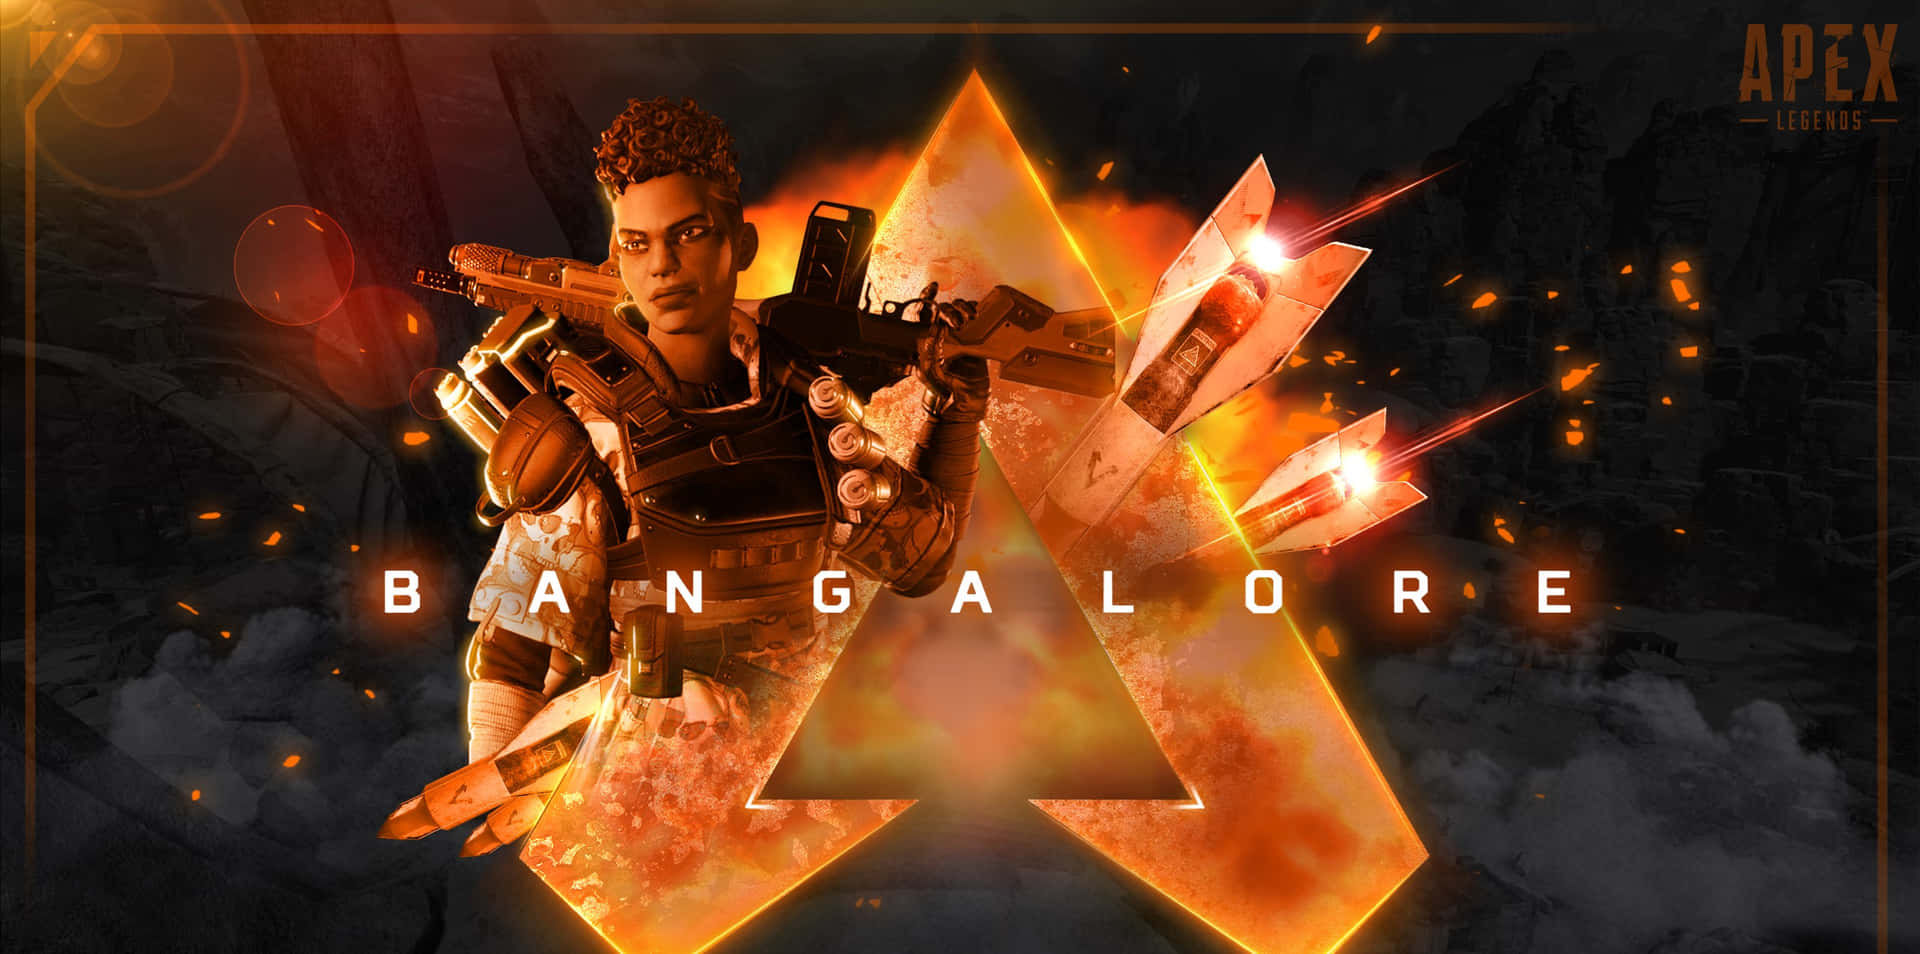 Caption: "bangalore Apex Legends - The Professional Soldier" Wallpaper